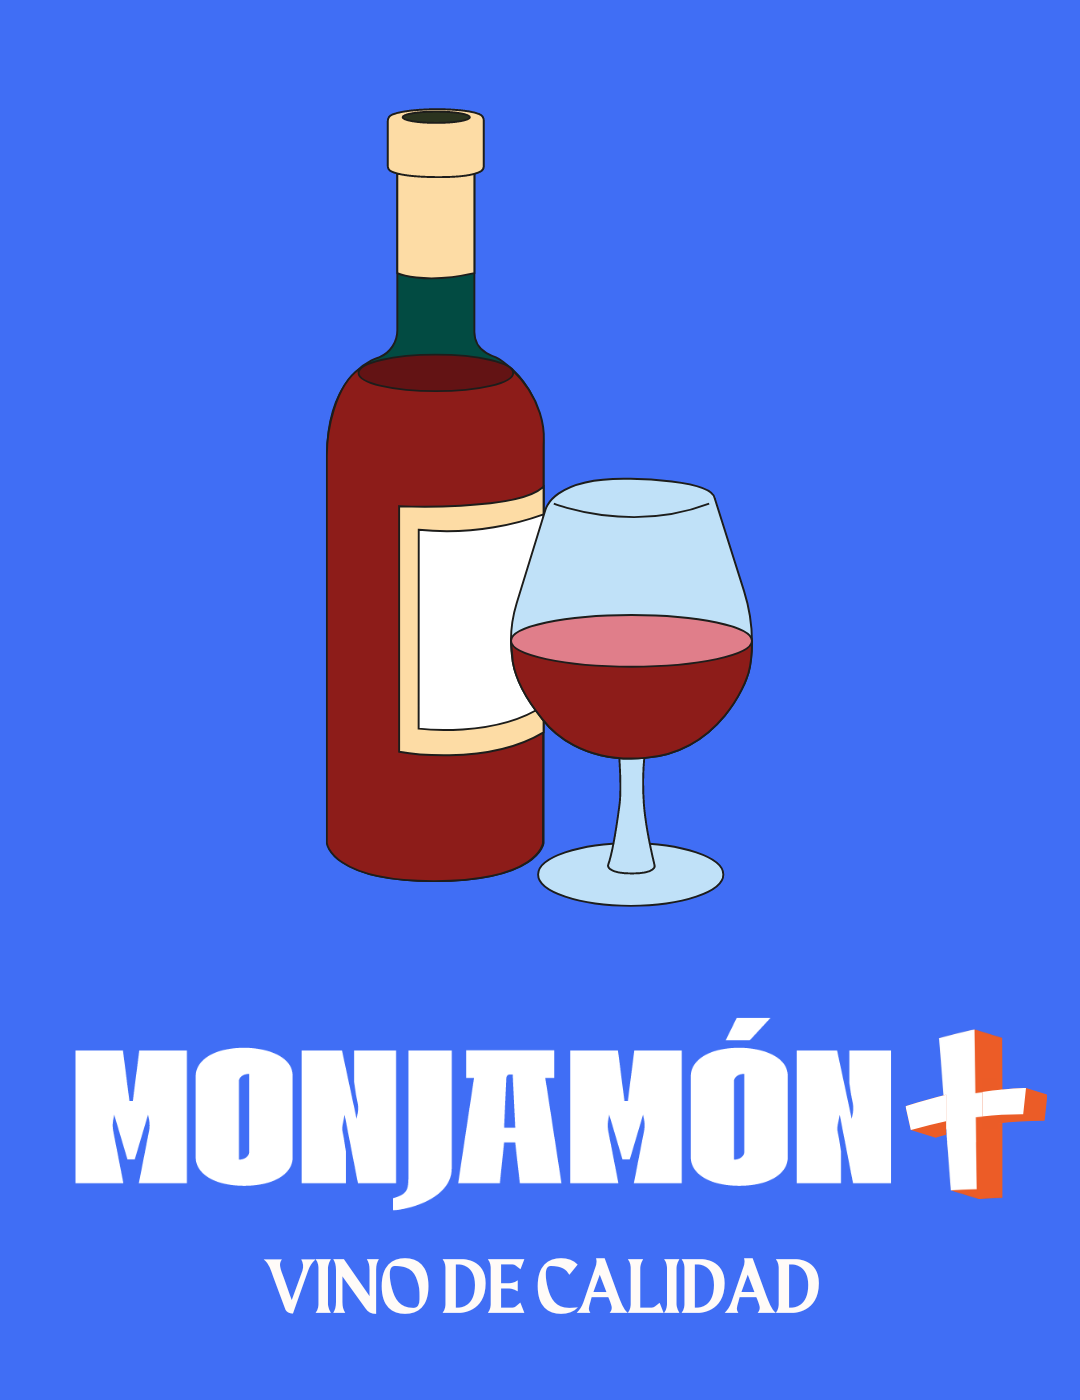 Monjamón + Vino - Suscripción a Vino Gourmet